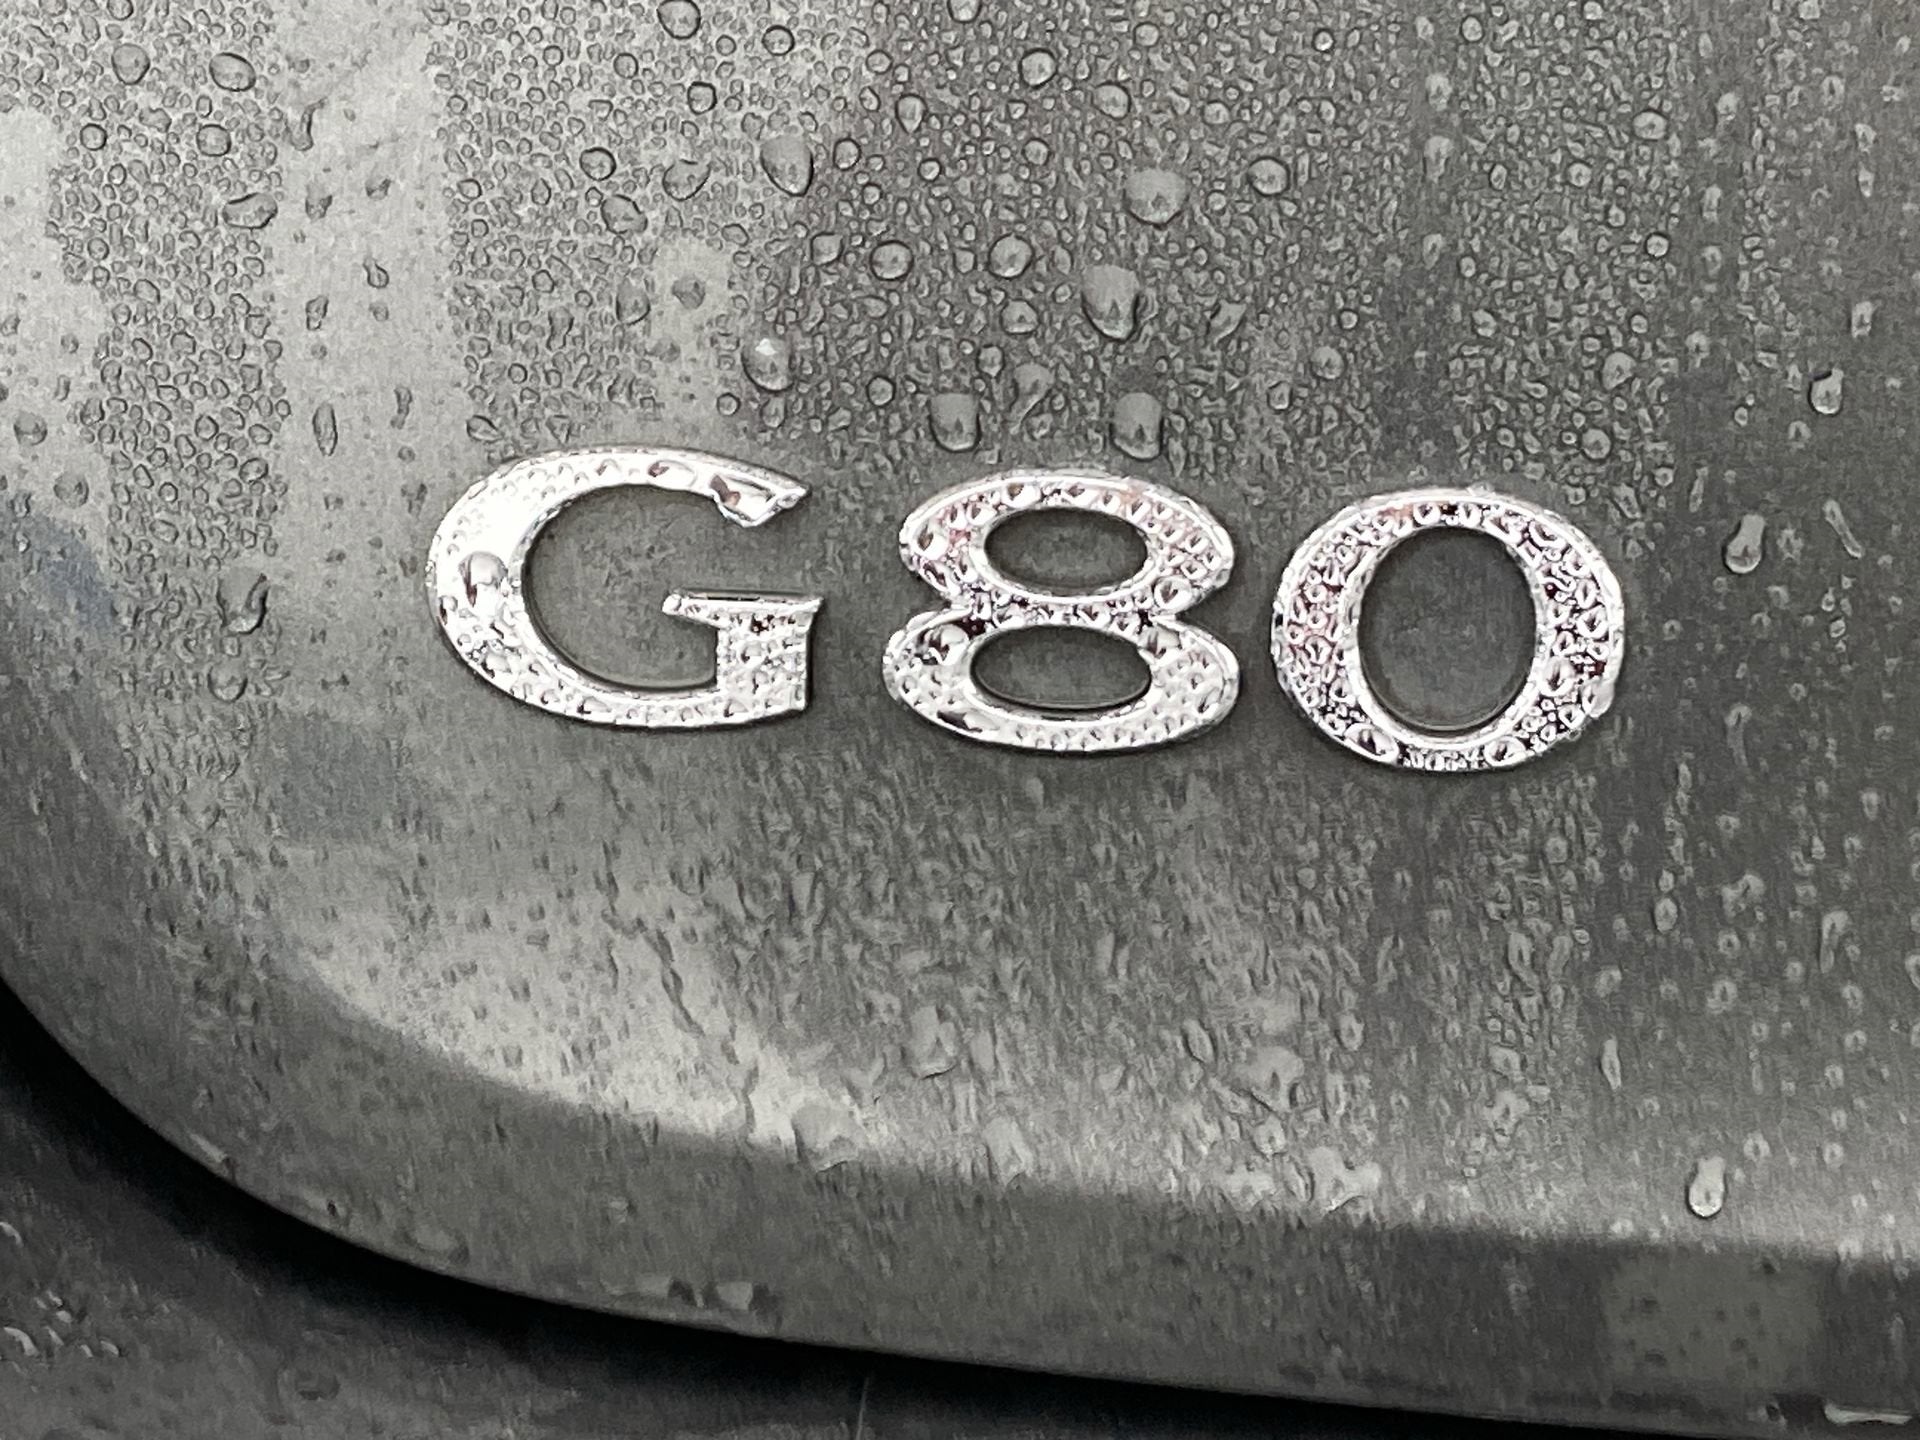 2018 Genesis G80 5.0L Ultimate